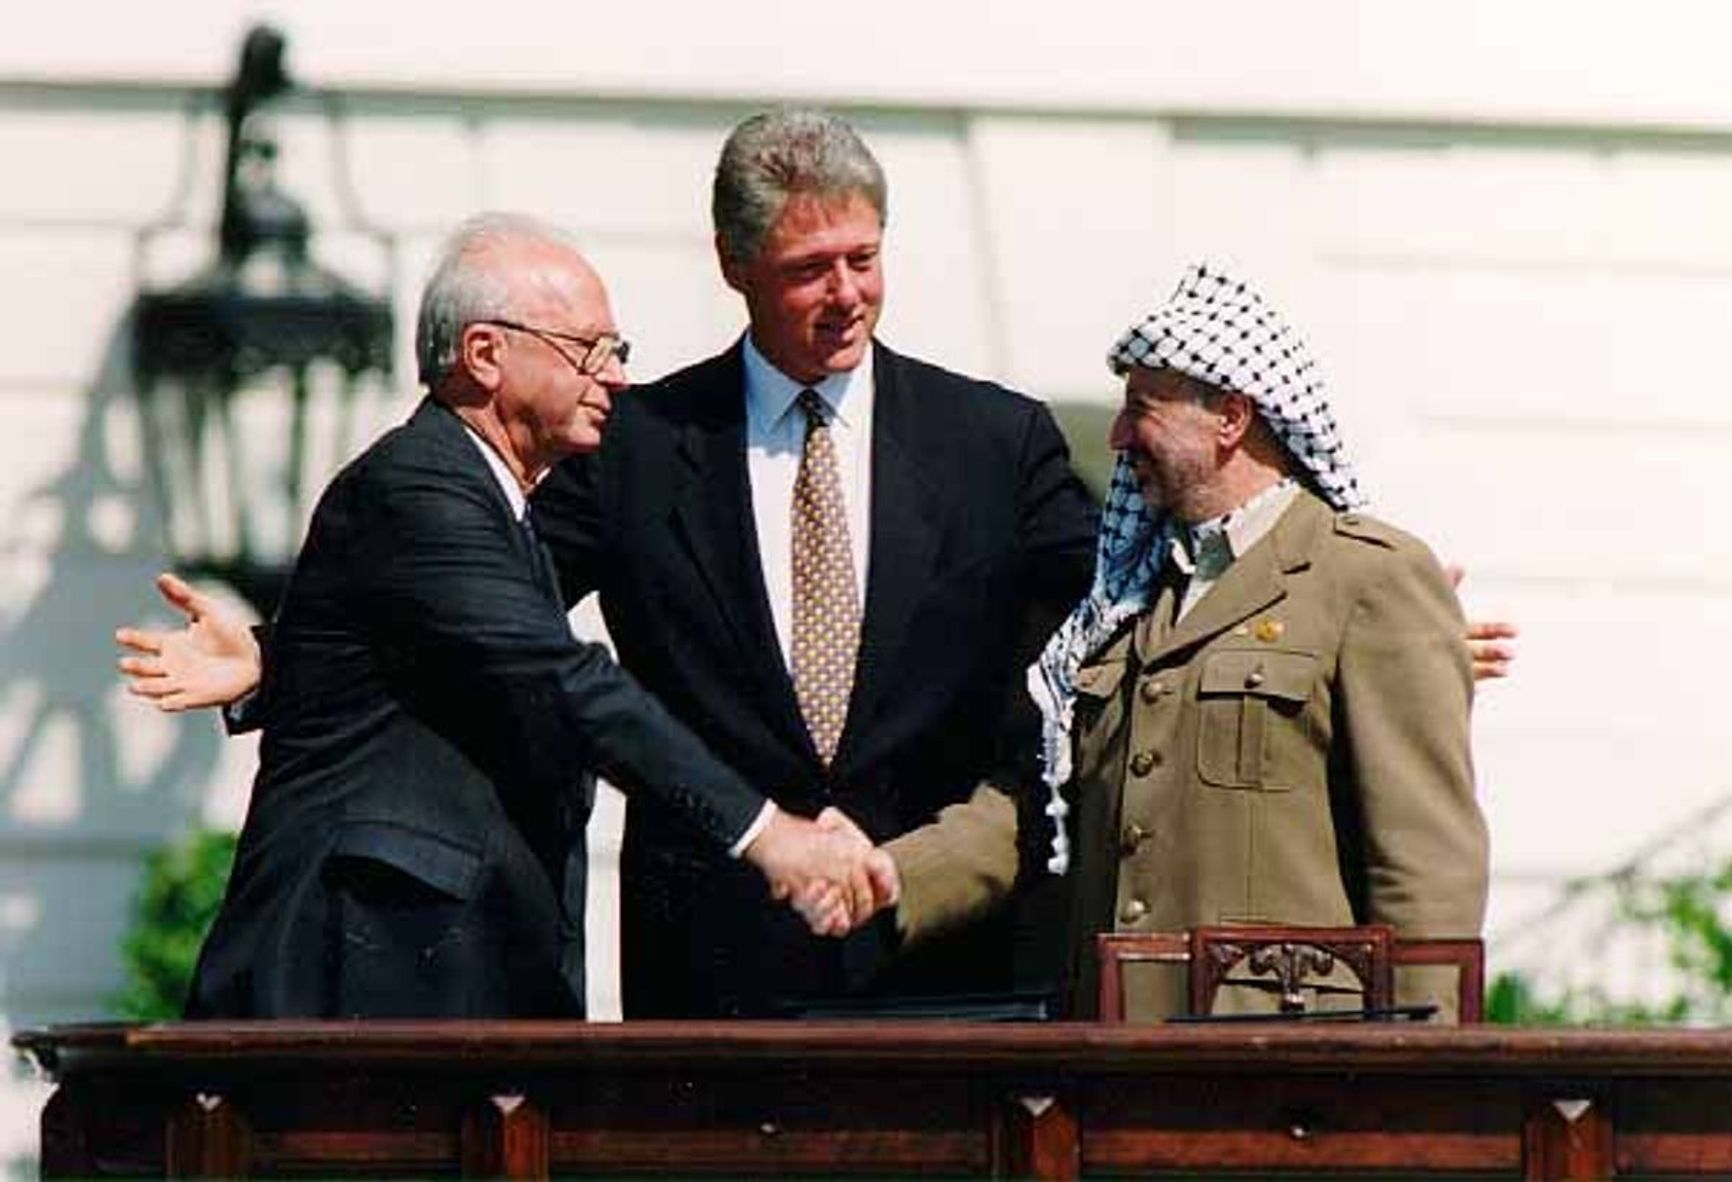 Yitzhak Rabin, Bill Clinton, and Yasser Arafat, September 13, 1993. Washington, D.C.